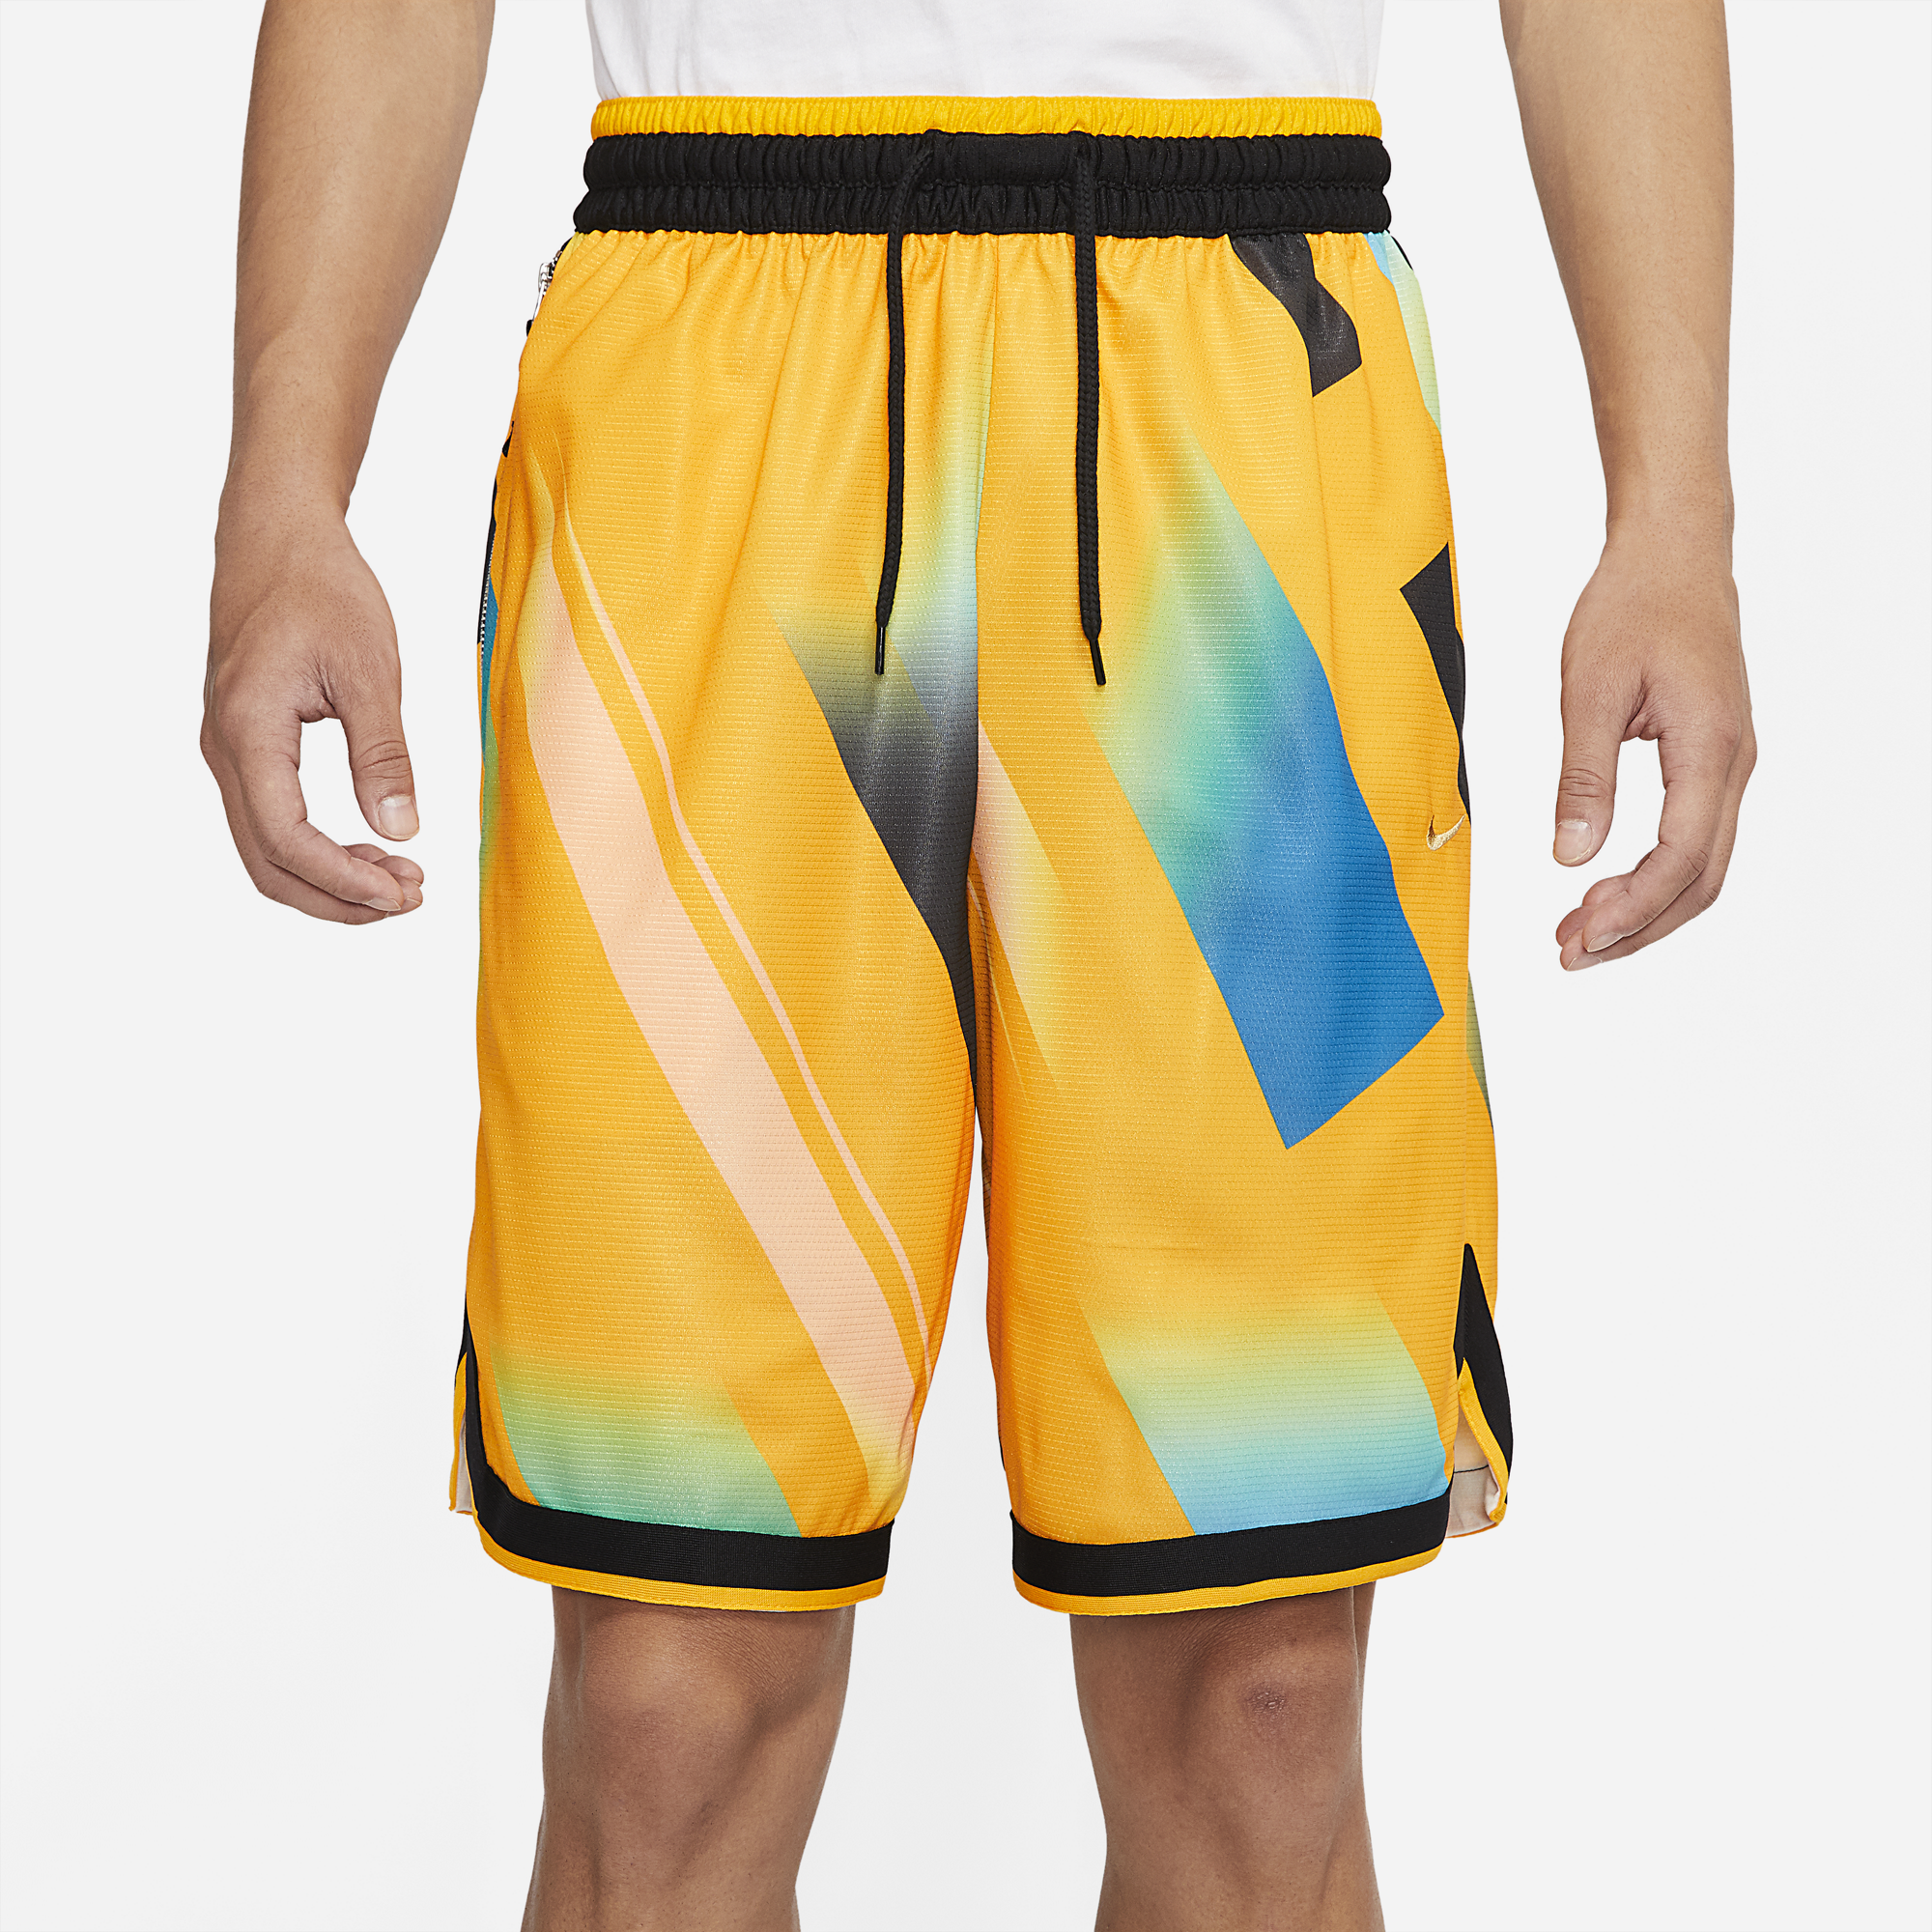 Nike Men's Dallas Mavericks Navy Courtside DNA Shorts, Medium, Blue